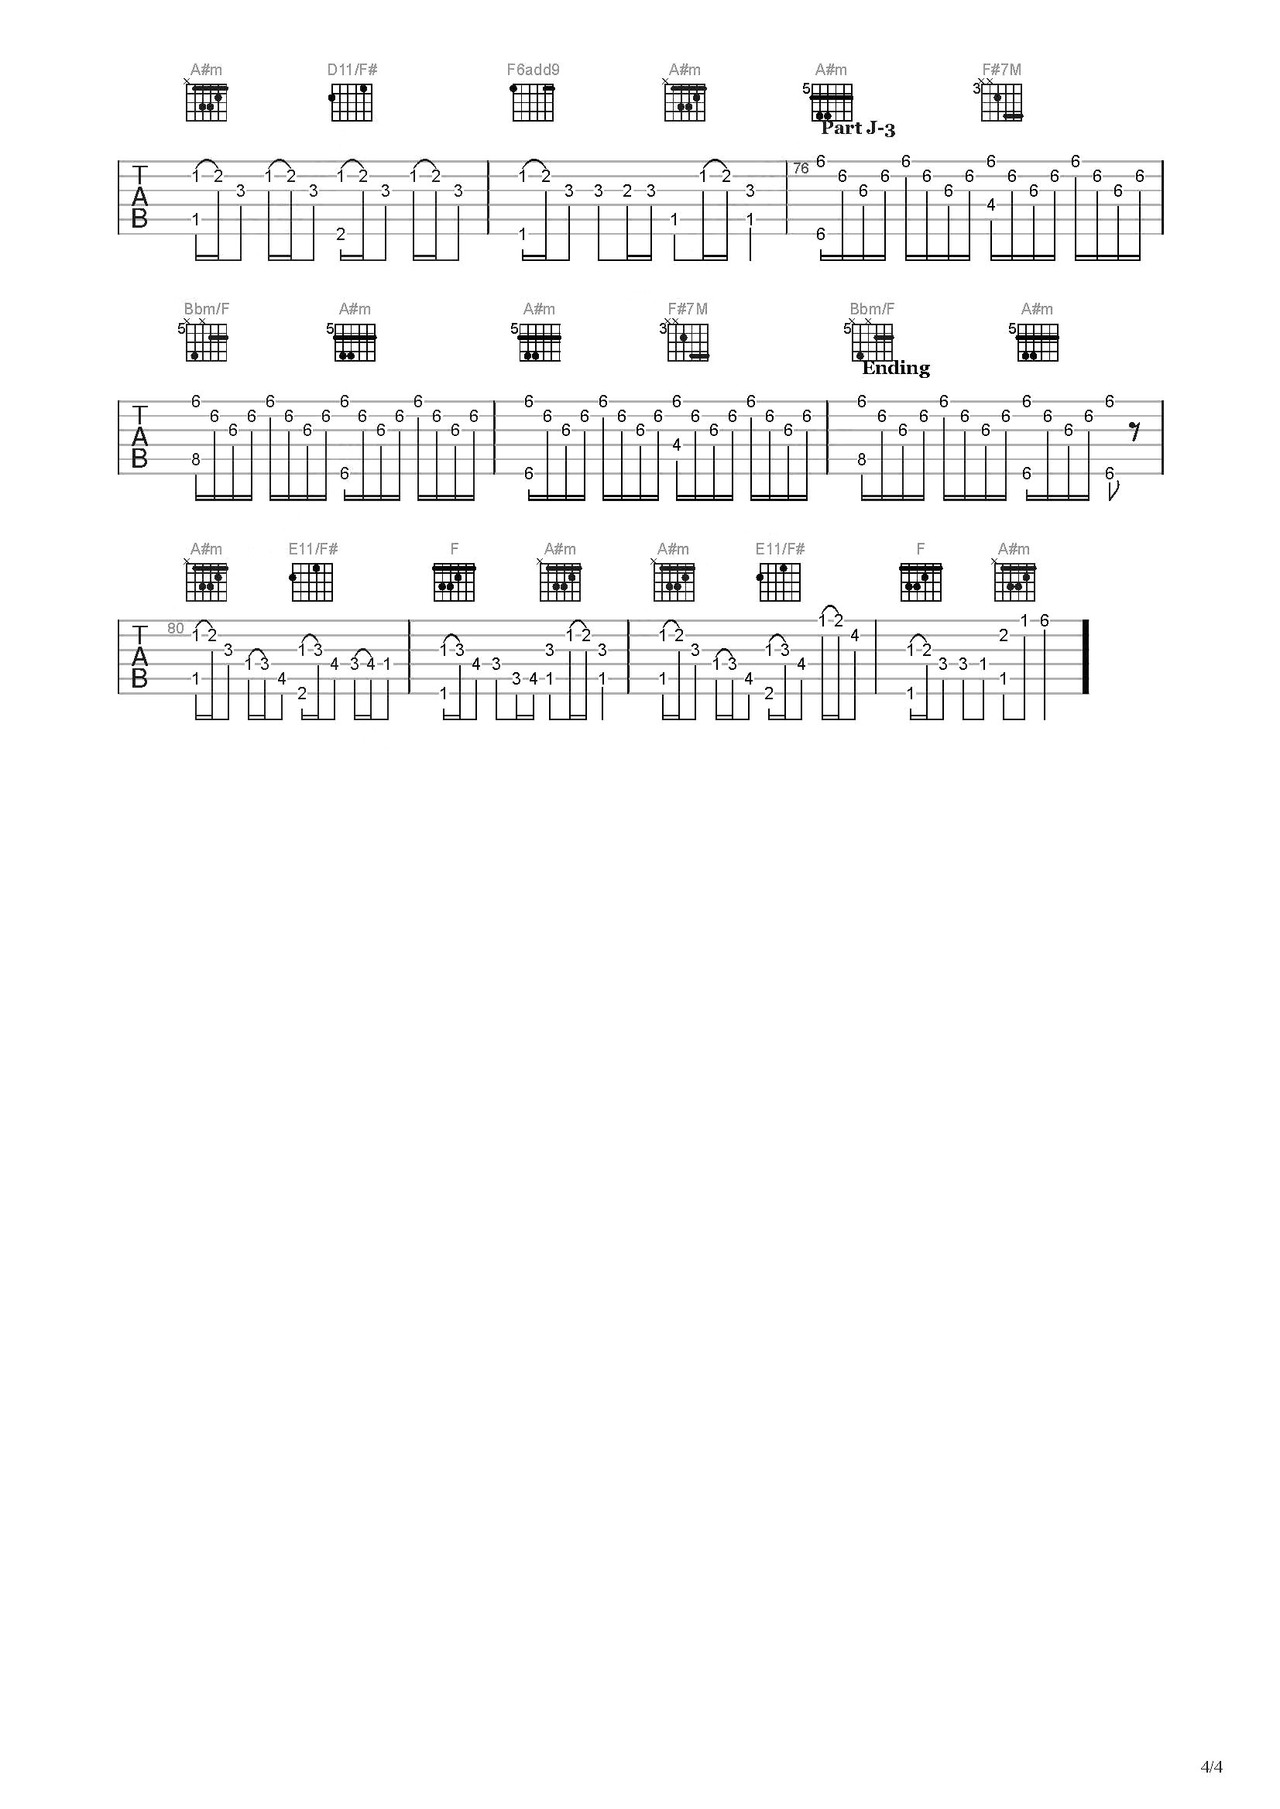 《克罗地亚狂想曲》指弹曲谱图片 - 吉他谱 选用C调指法编配 - 中级谱子 - 六线谱(独奏/指弹谱) - 易谱库